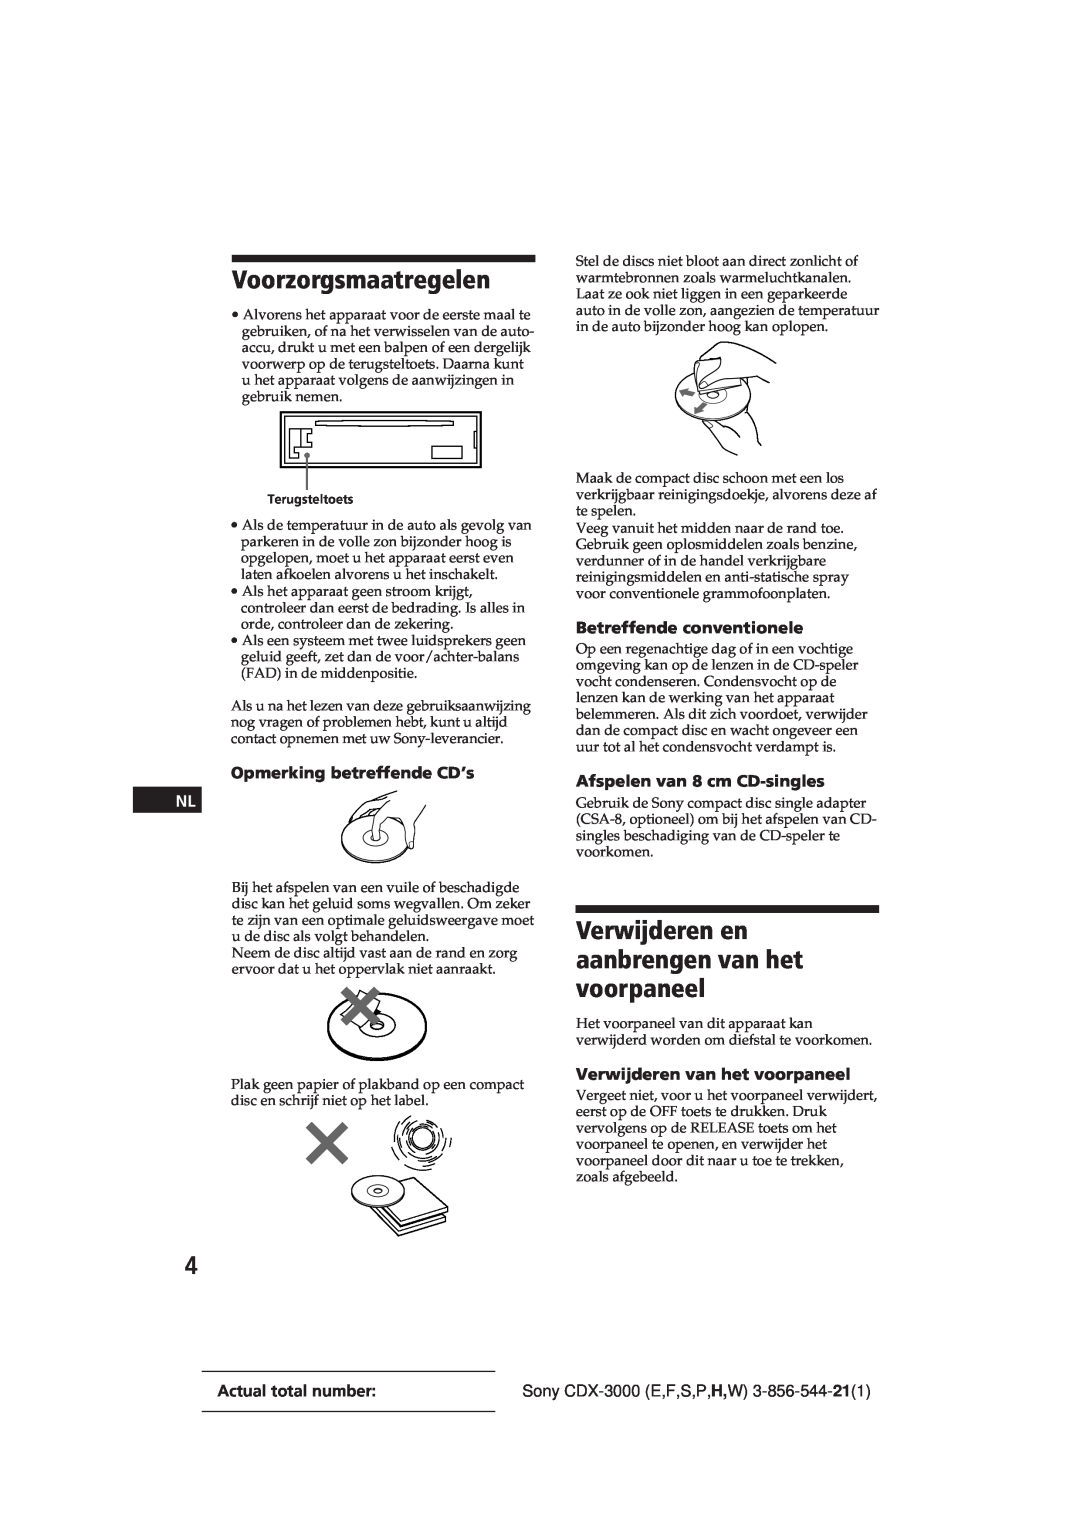 Sony CDX-3000 manual Voorzorgsmaatregelen, Verwijderen en aanbrengen van het voorpaneel, Opmerking betreffende CD’s 